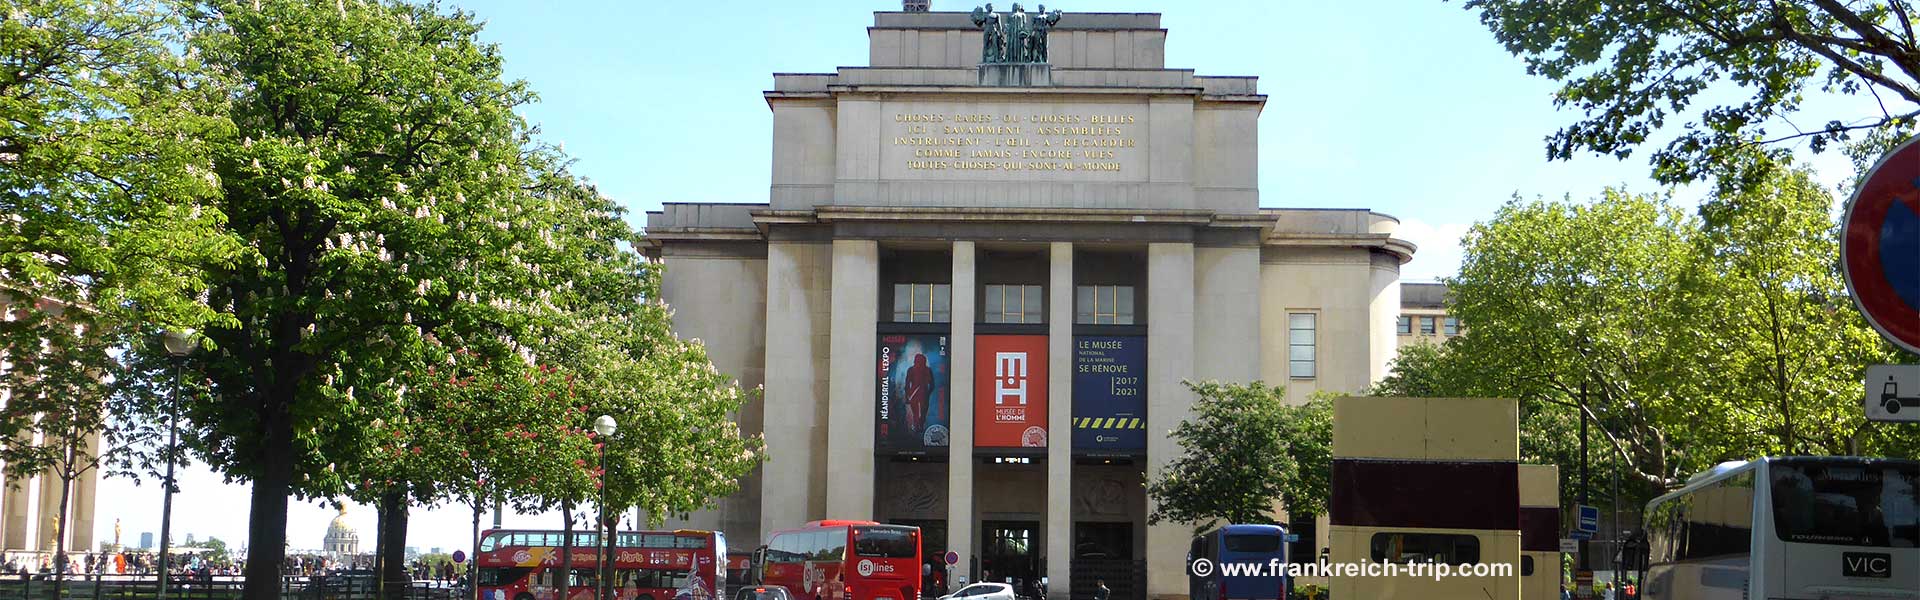 Musée de l'homme in Paris